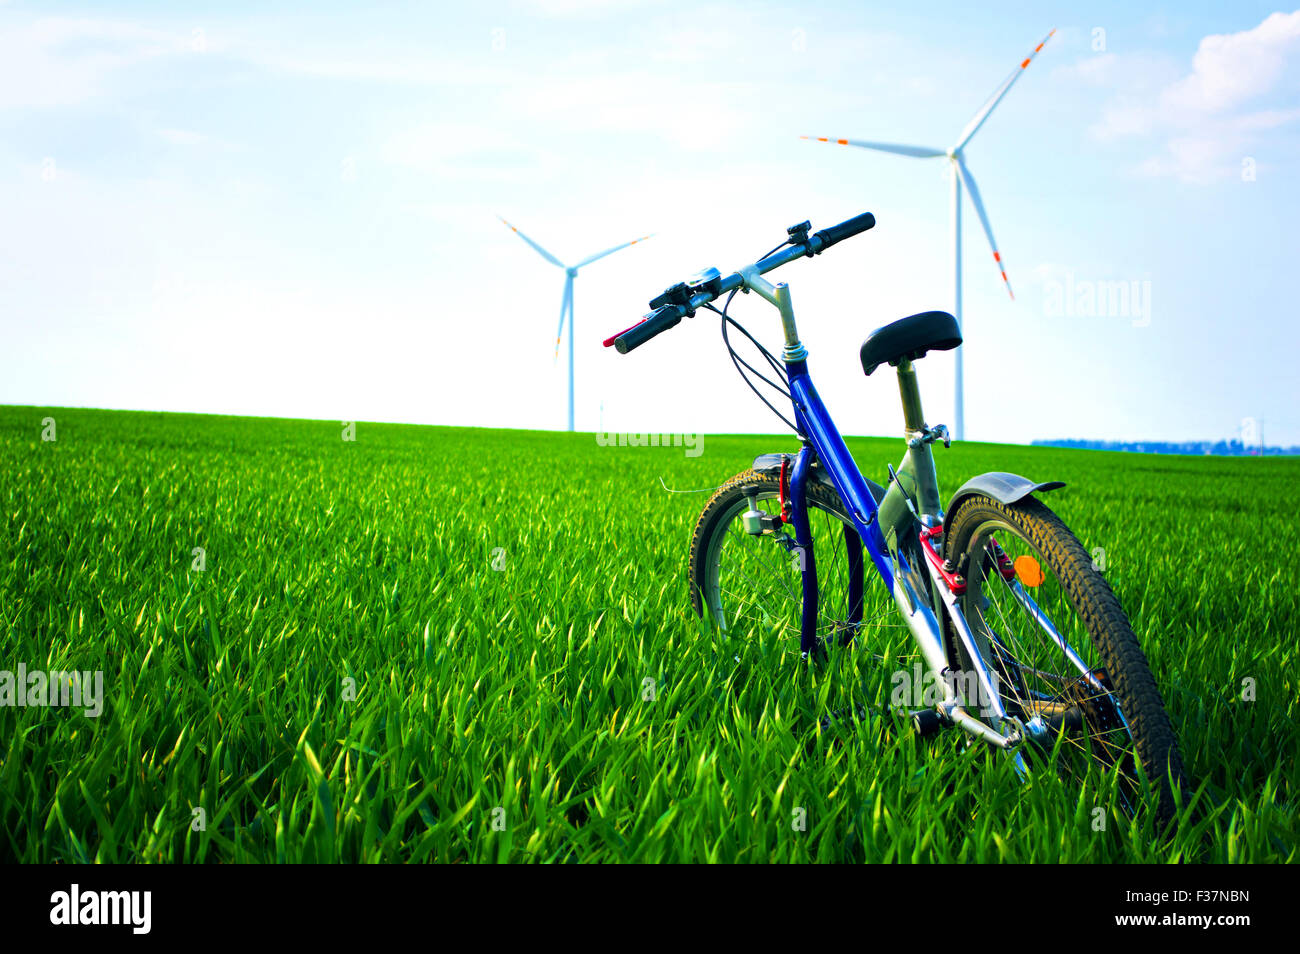 Sport e natura in estate. In bici sul verde del campo con erba in estate. Foto Stock